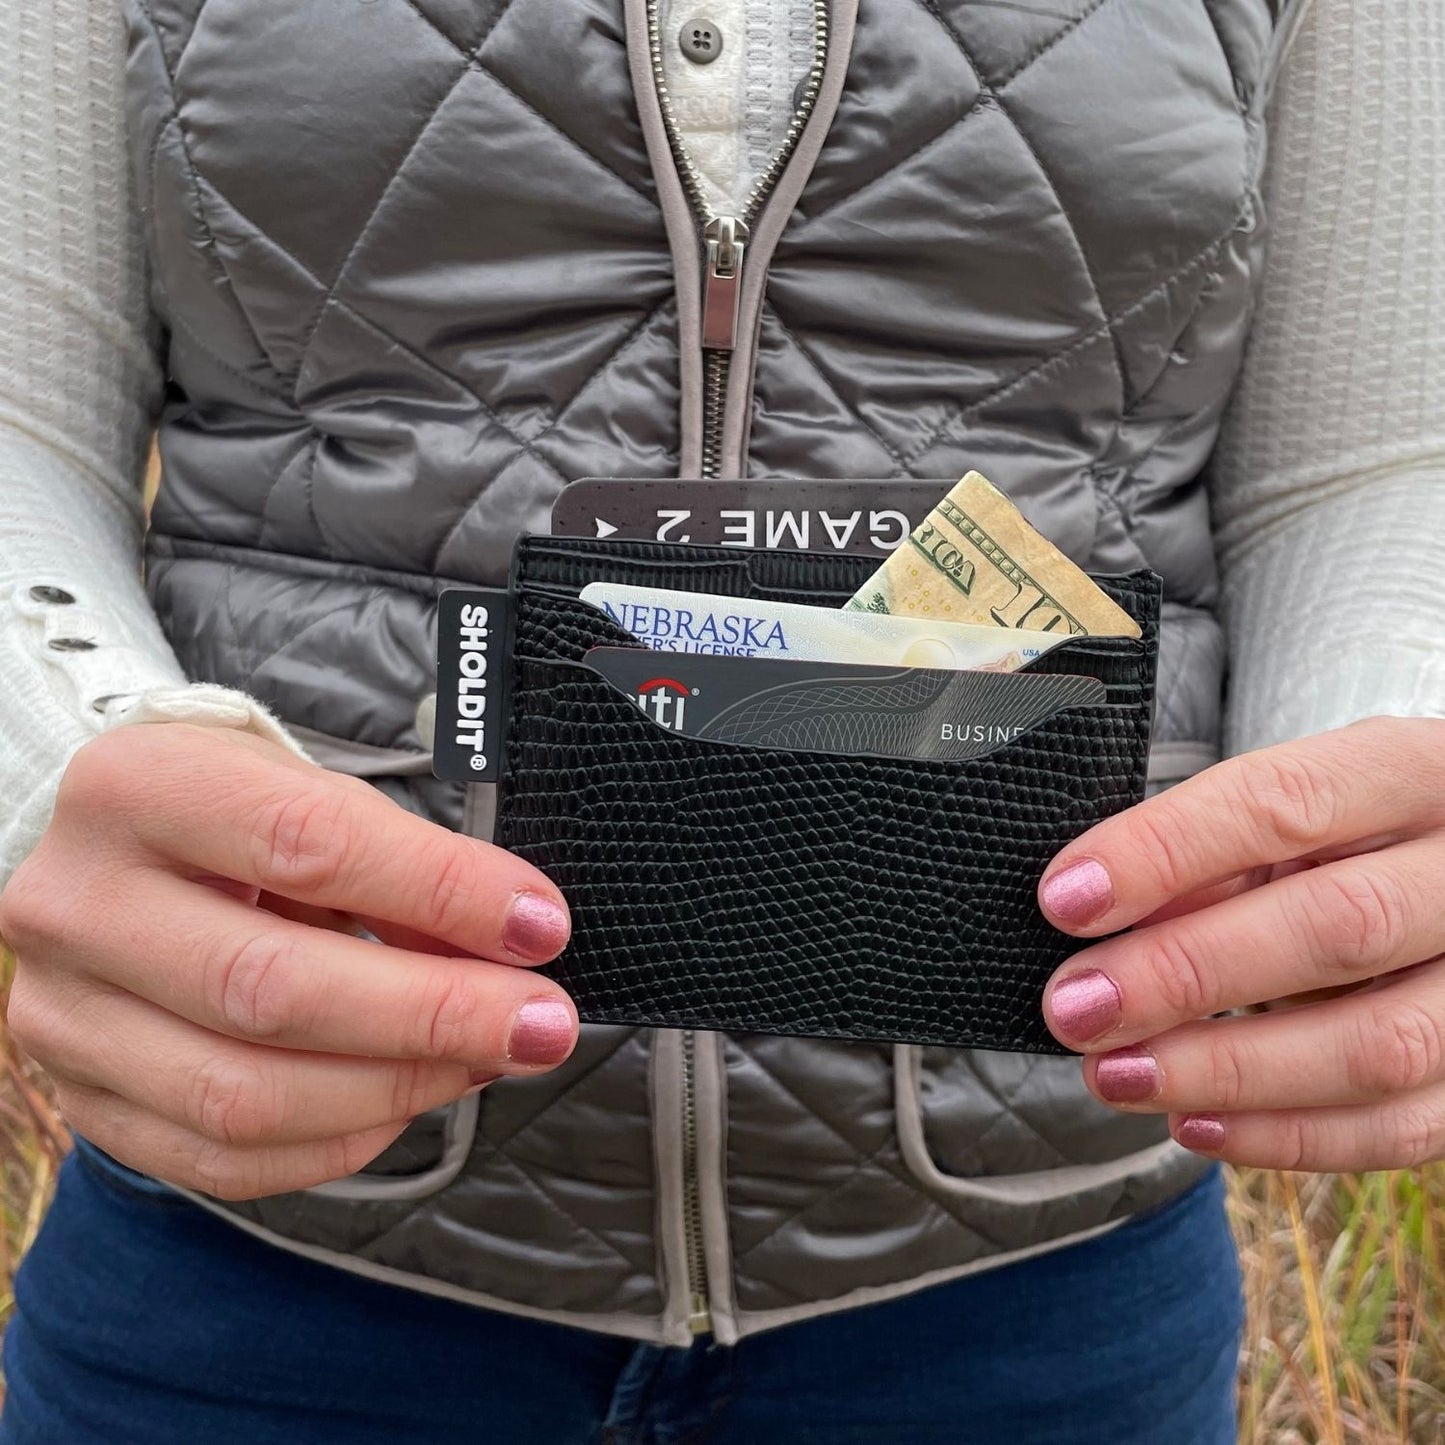 SHOLDIT card holder wallet black shown in hands